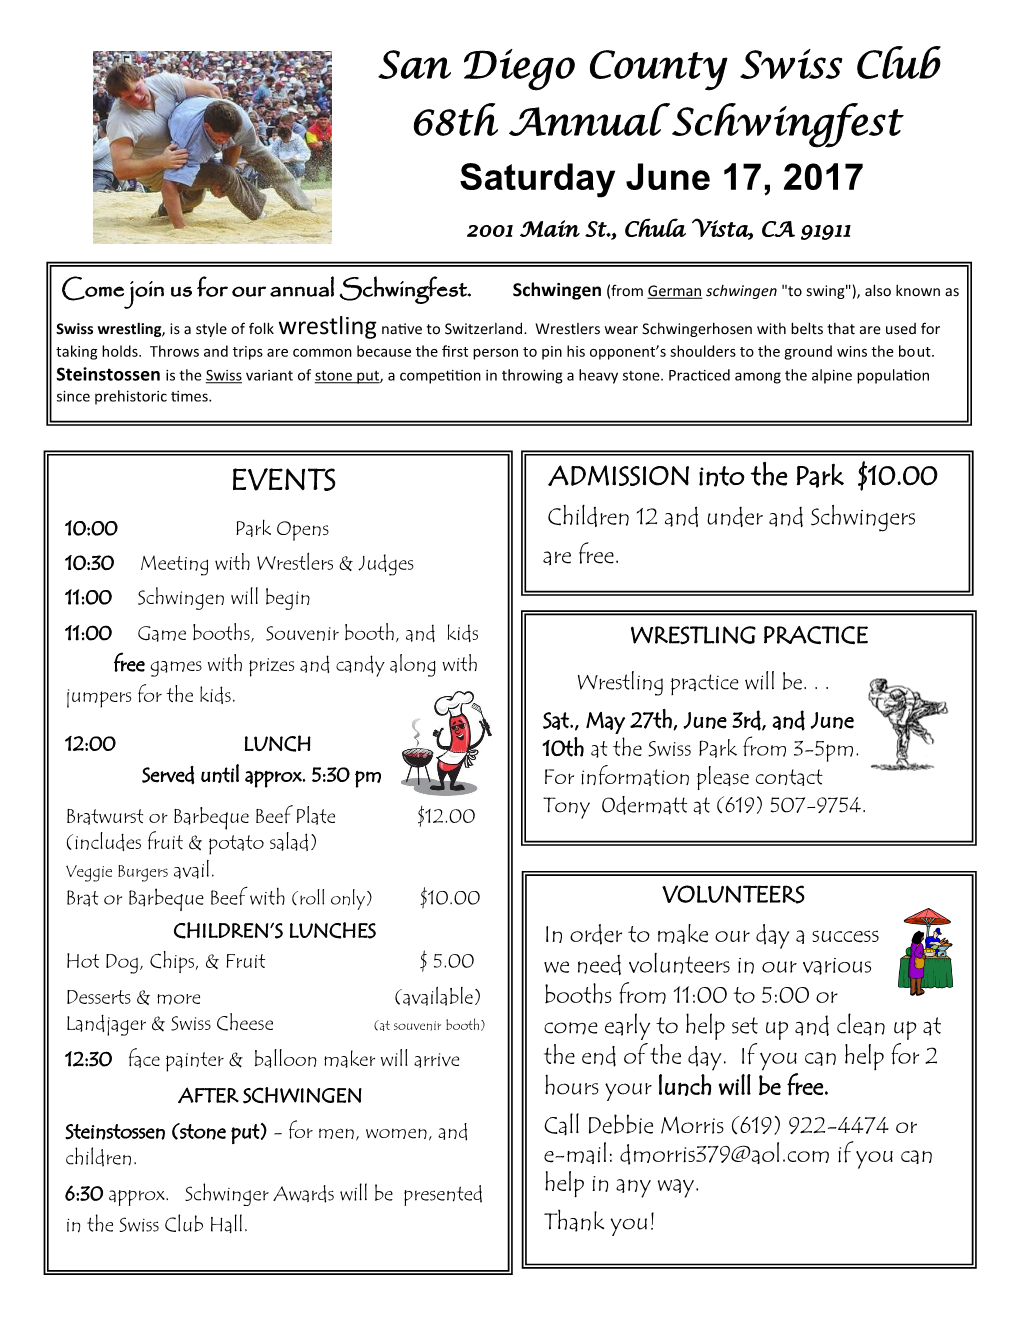 San Diego County Swiss Club 68Th Annual Schwingfest Saturday June 17, 2017